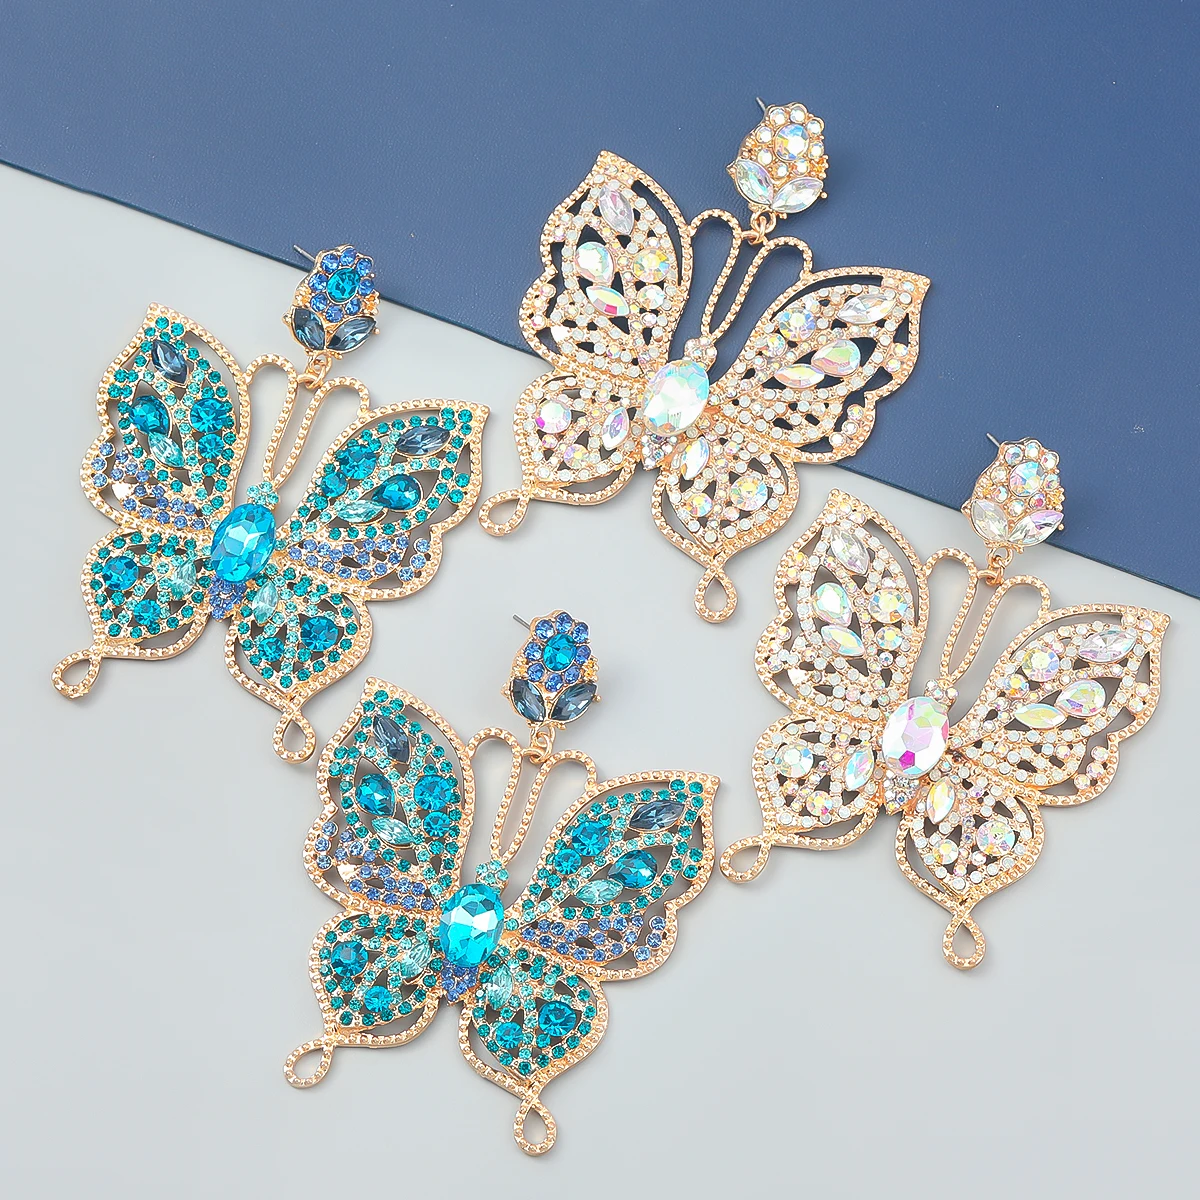 

JIJIAWENHUA New Multicolor Rhinestone Butterfly Shape Dangle Earrings Women's Earrings Fashion Statement Jewelry Accessories